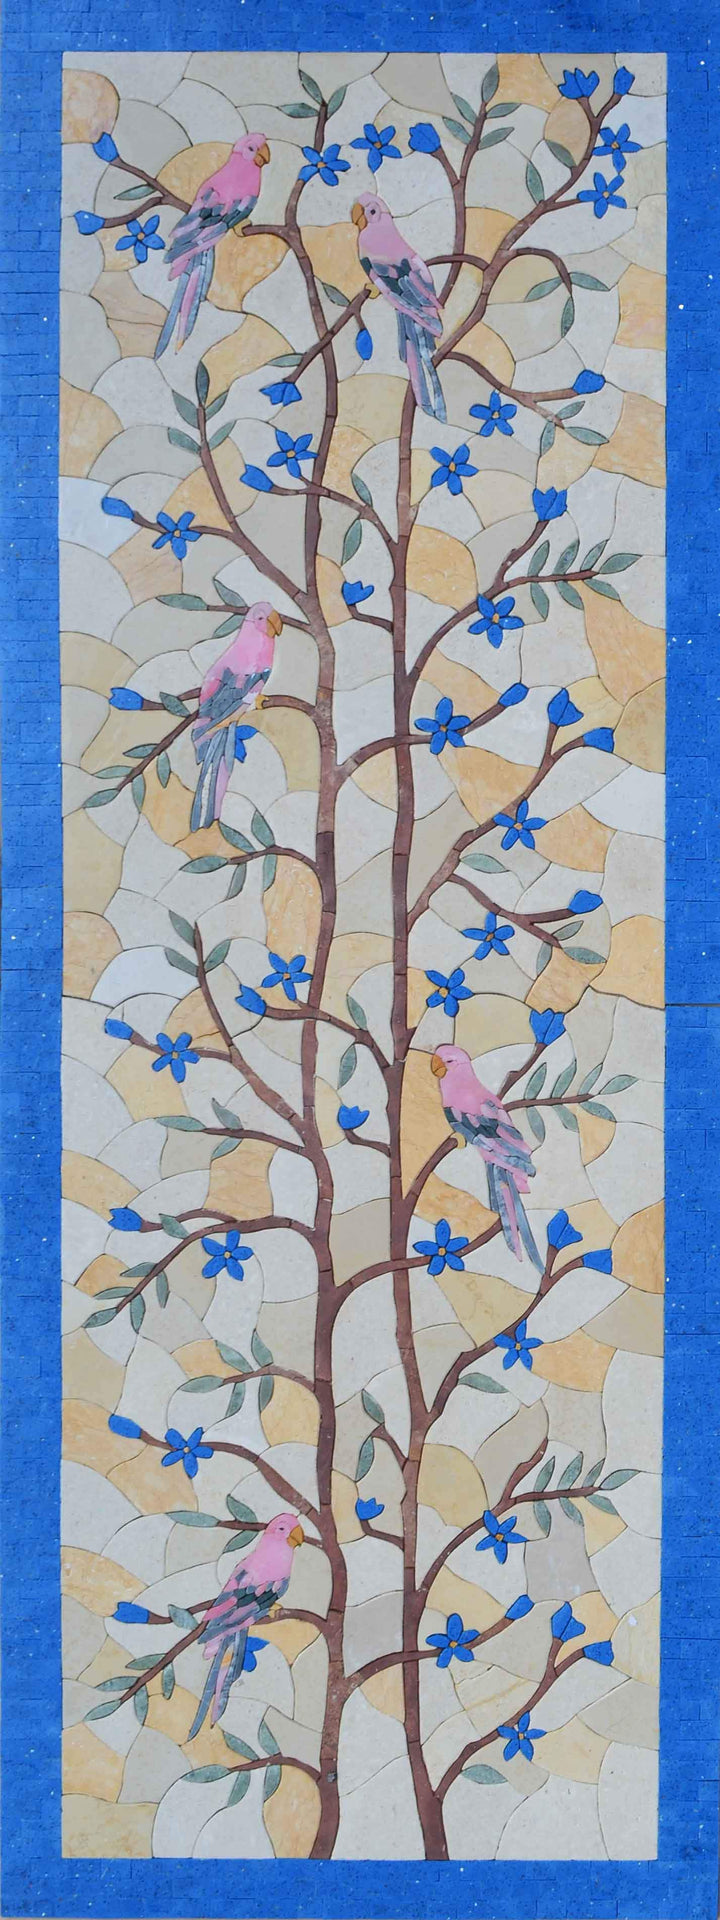 Mural em mosaico - pássaros em galho de árvore